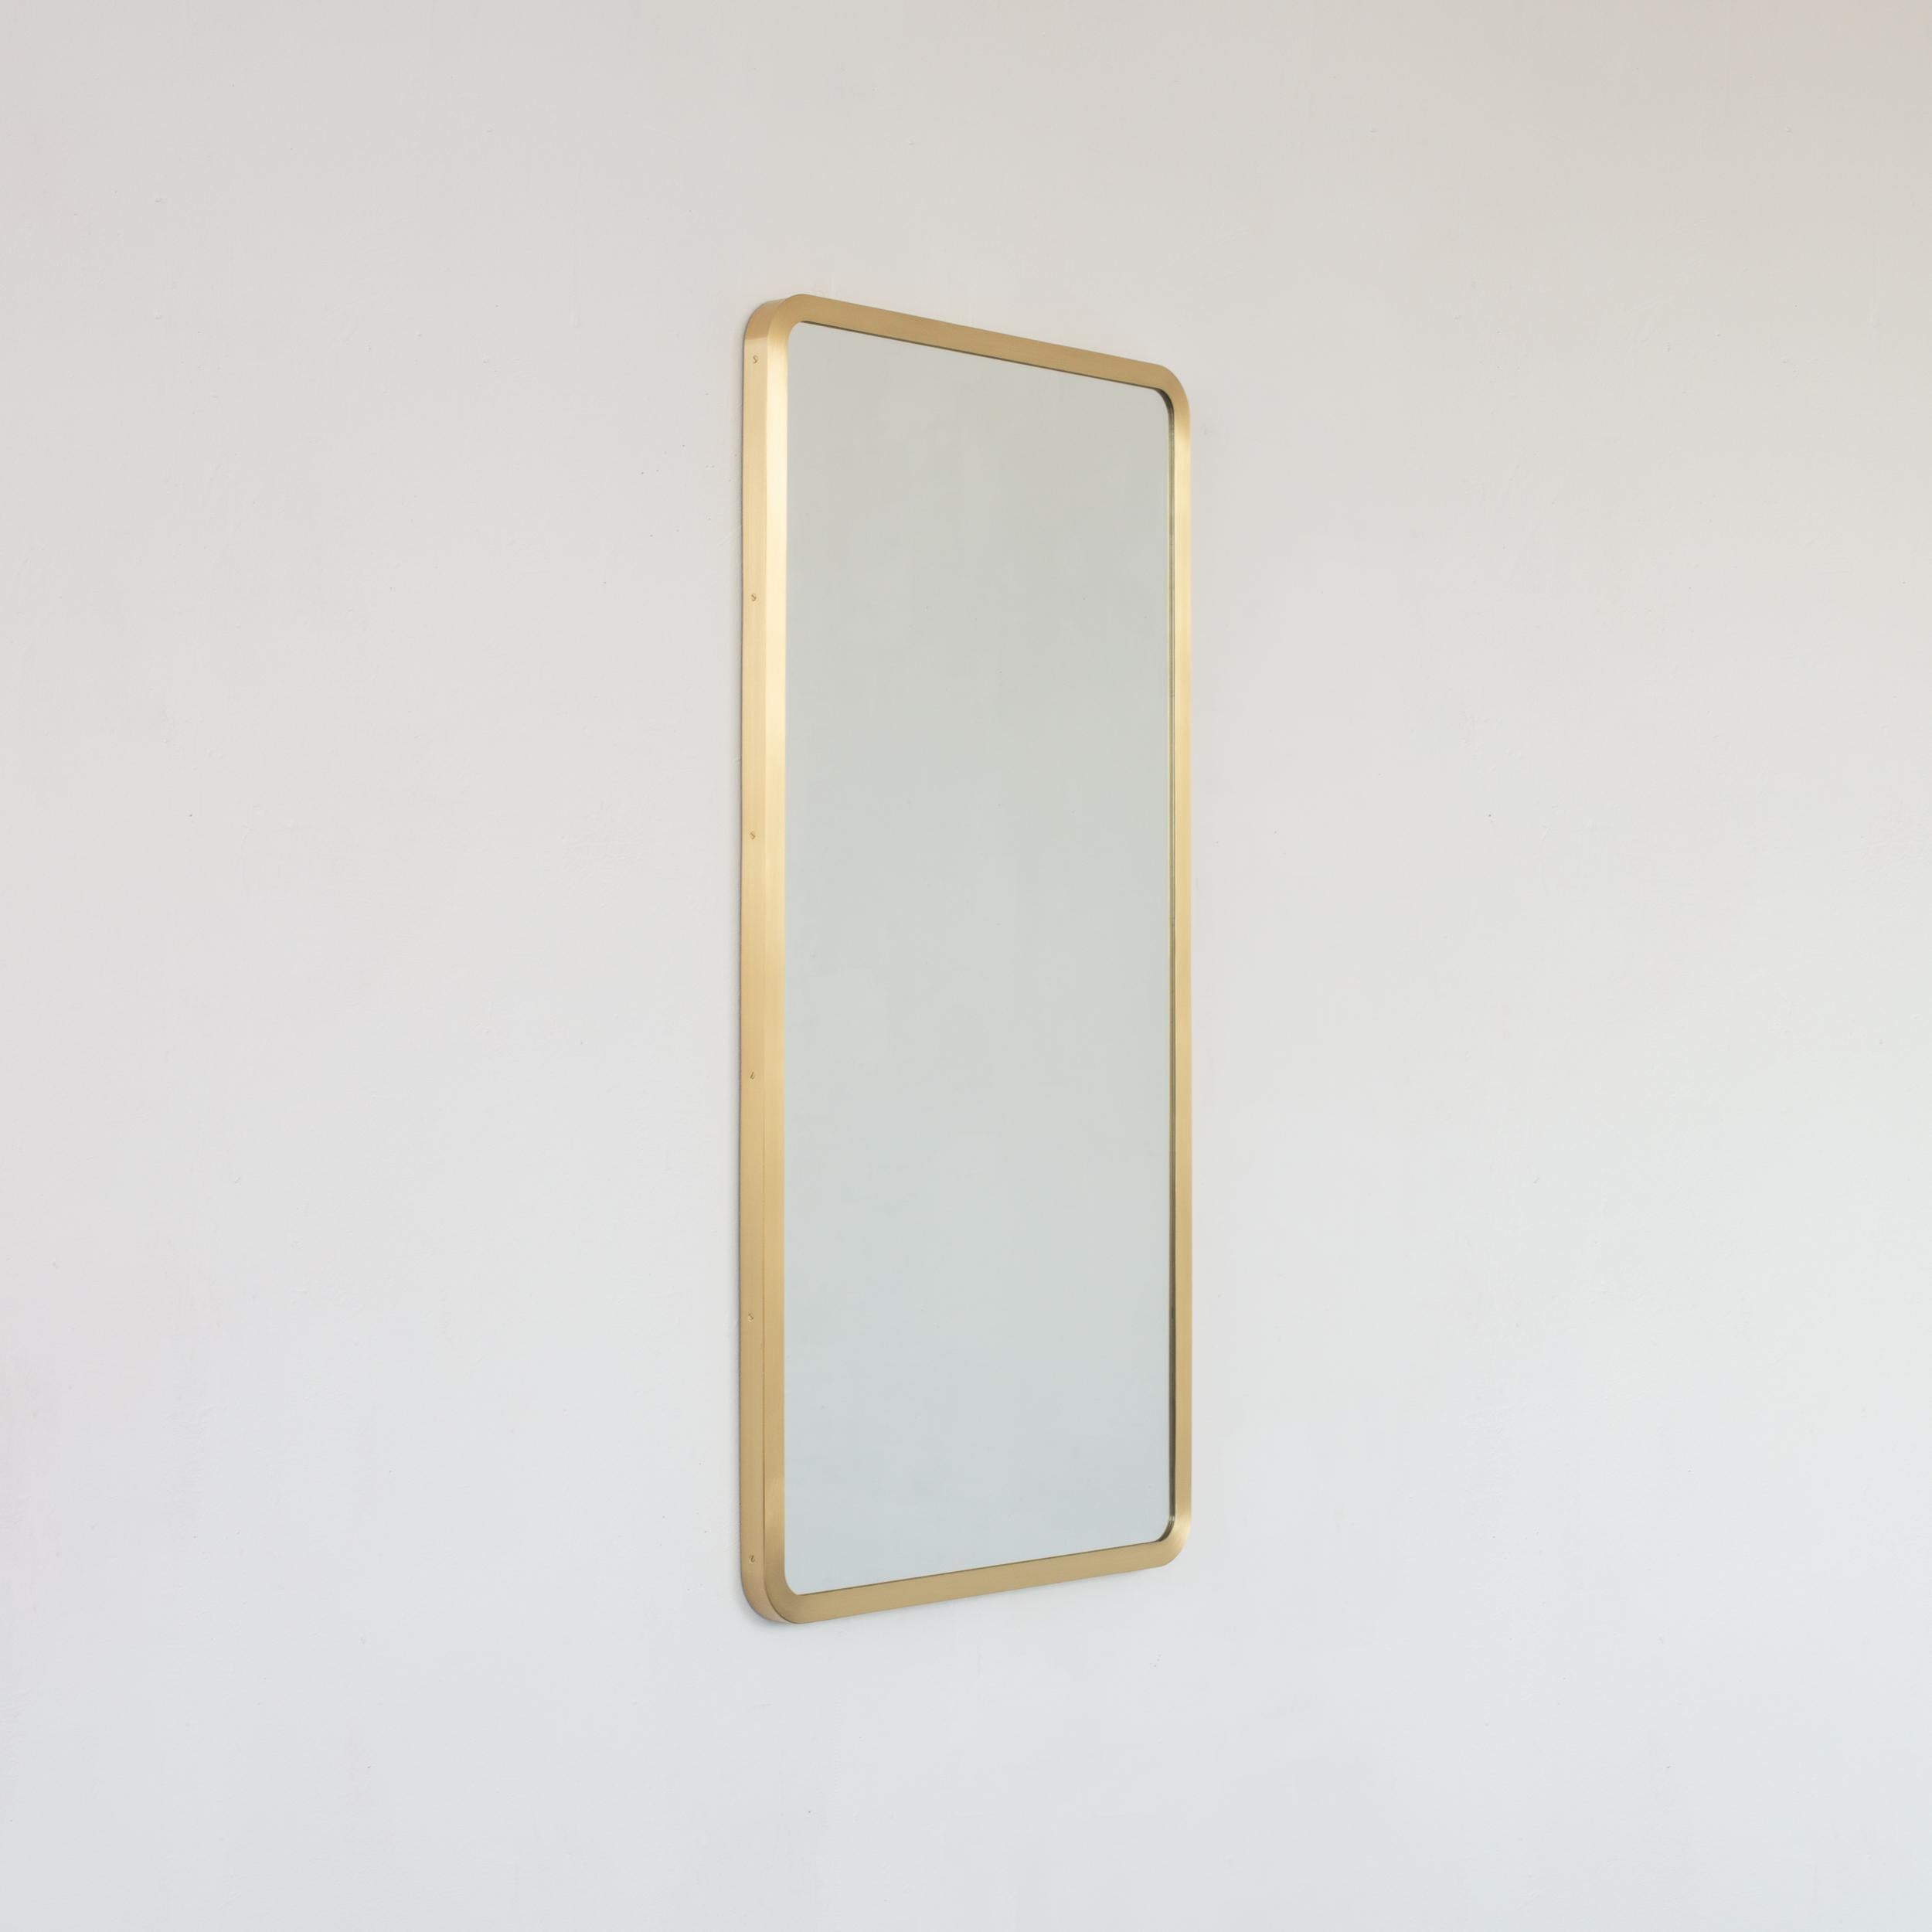 Moderner rechteckiger Spiegel mit einem eleganten Rahmen aus gebürstetem Messing.  Teil der charmanten Quadris™ Kollektion, entworfen und handgefertigt in London, UK. 

Unser brandneues 'Full Frame'-Design behält den schicken und eleganten Stil der